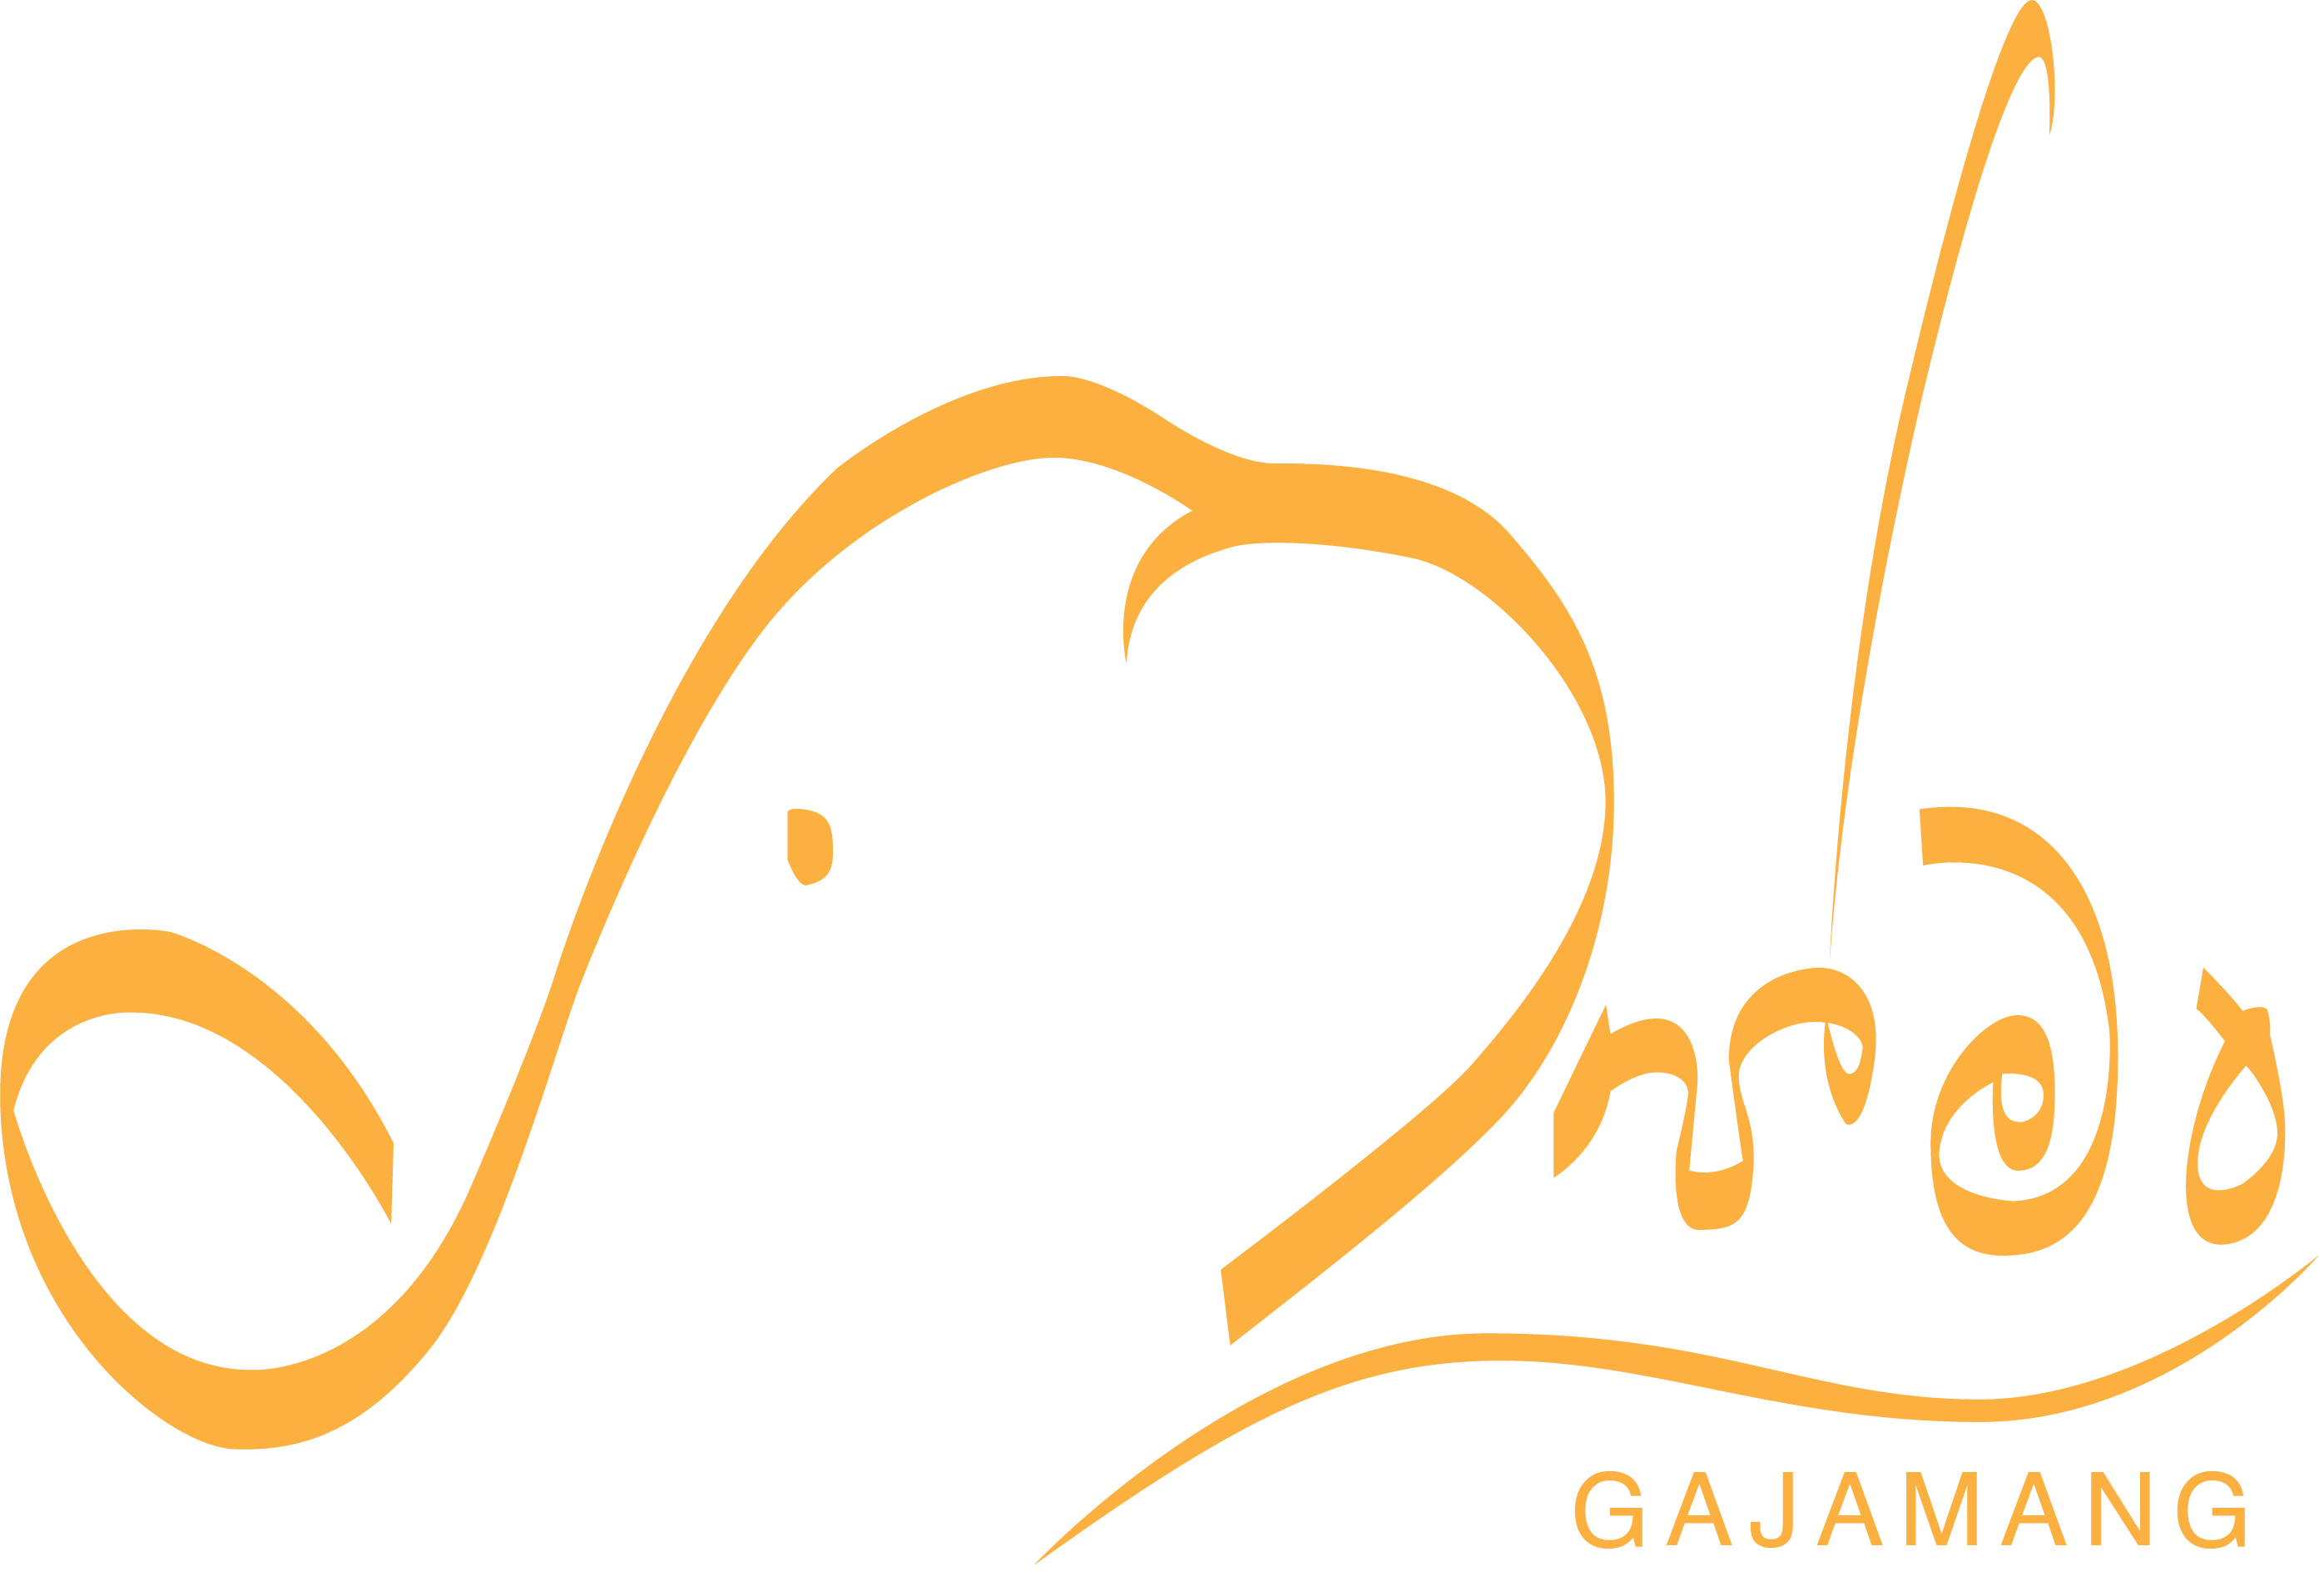 Gajamang